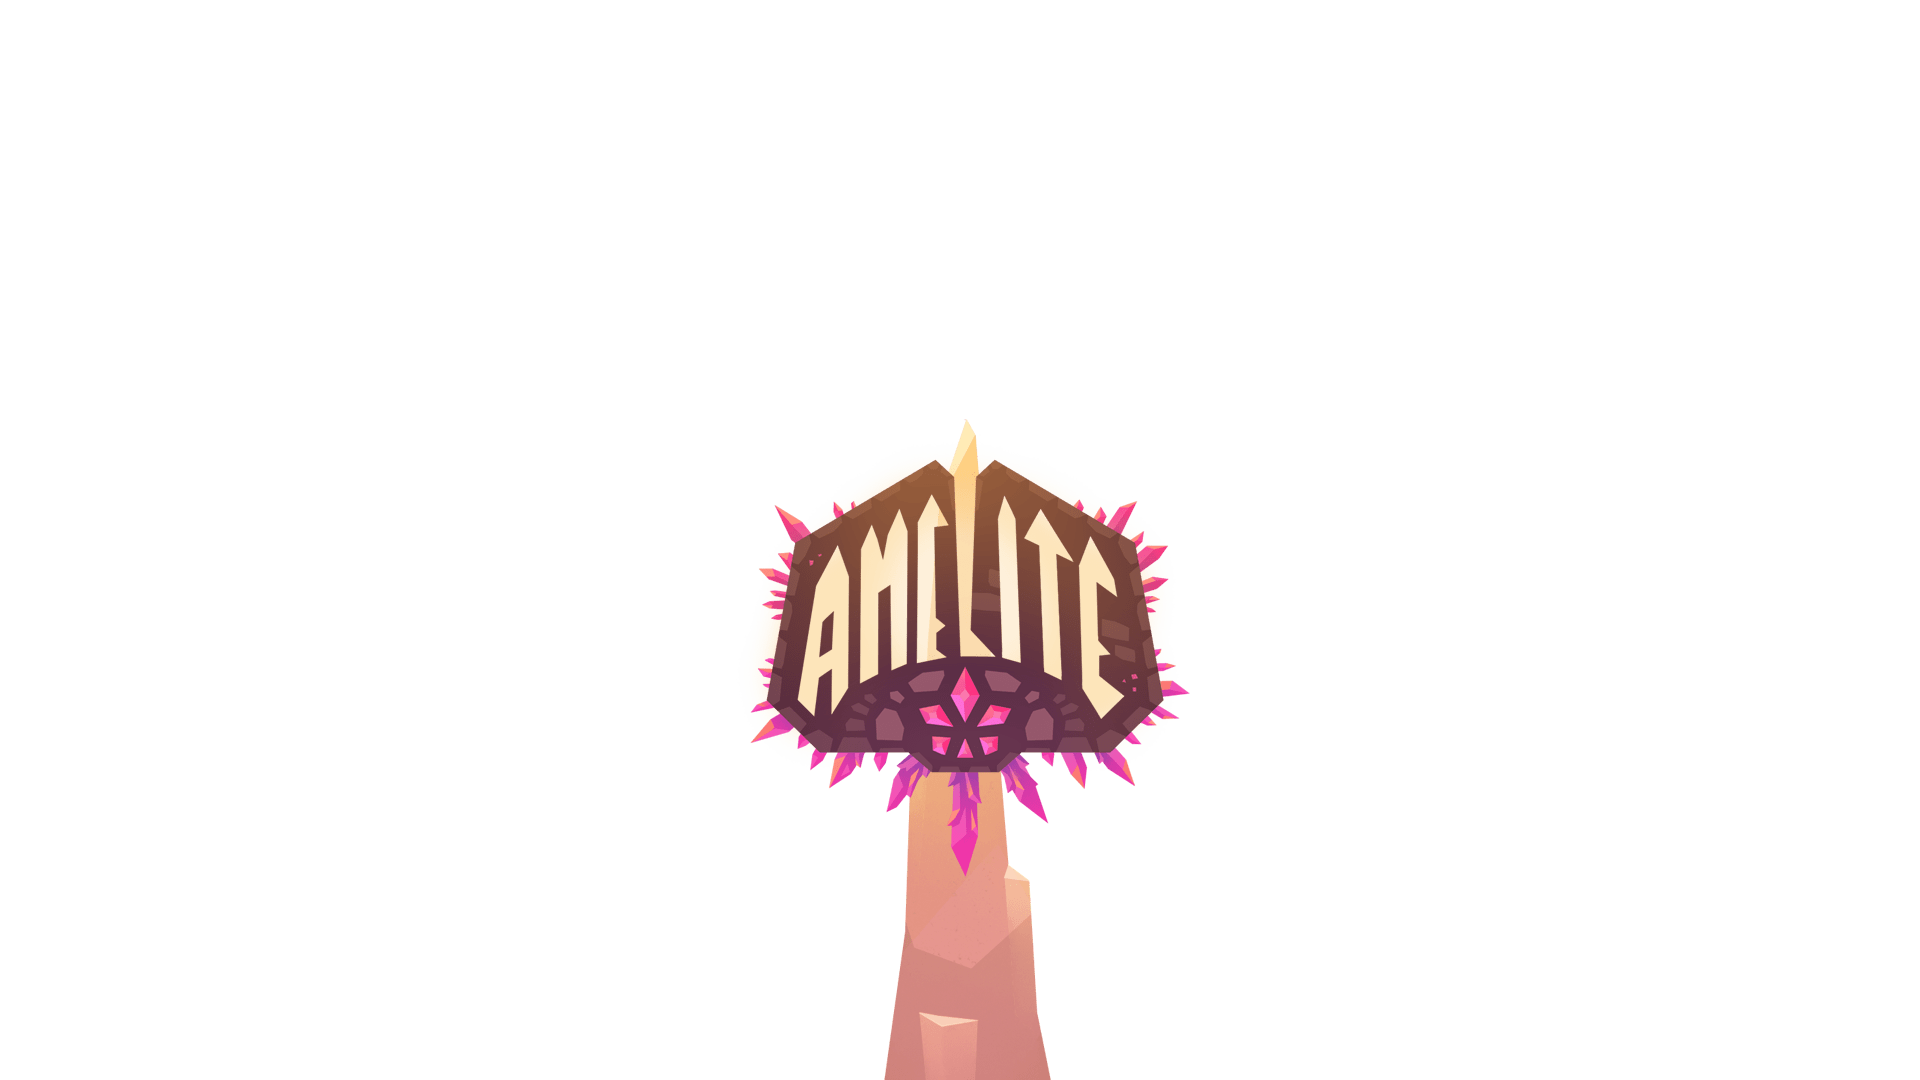 Amelite